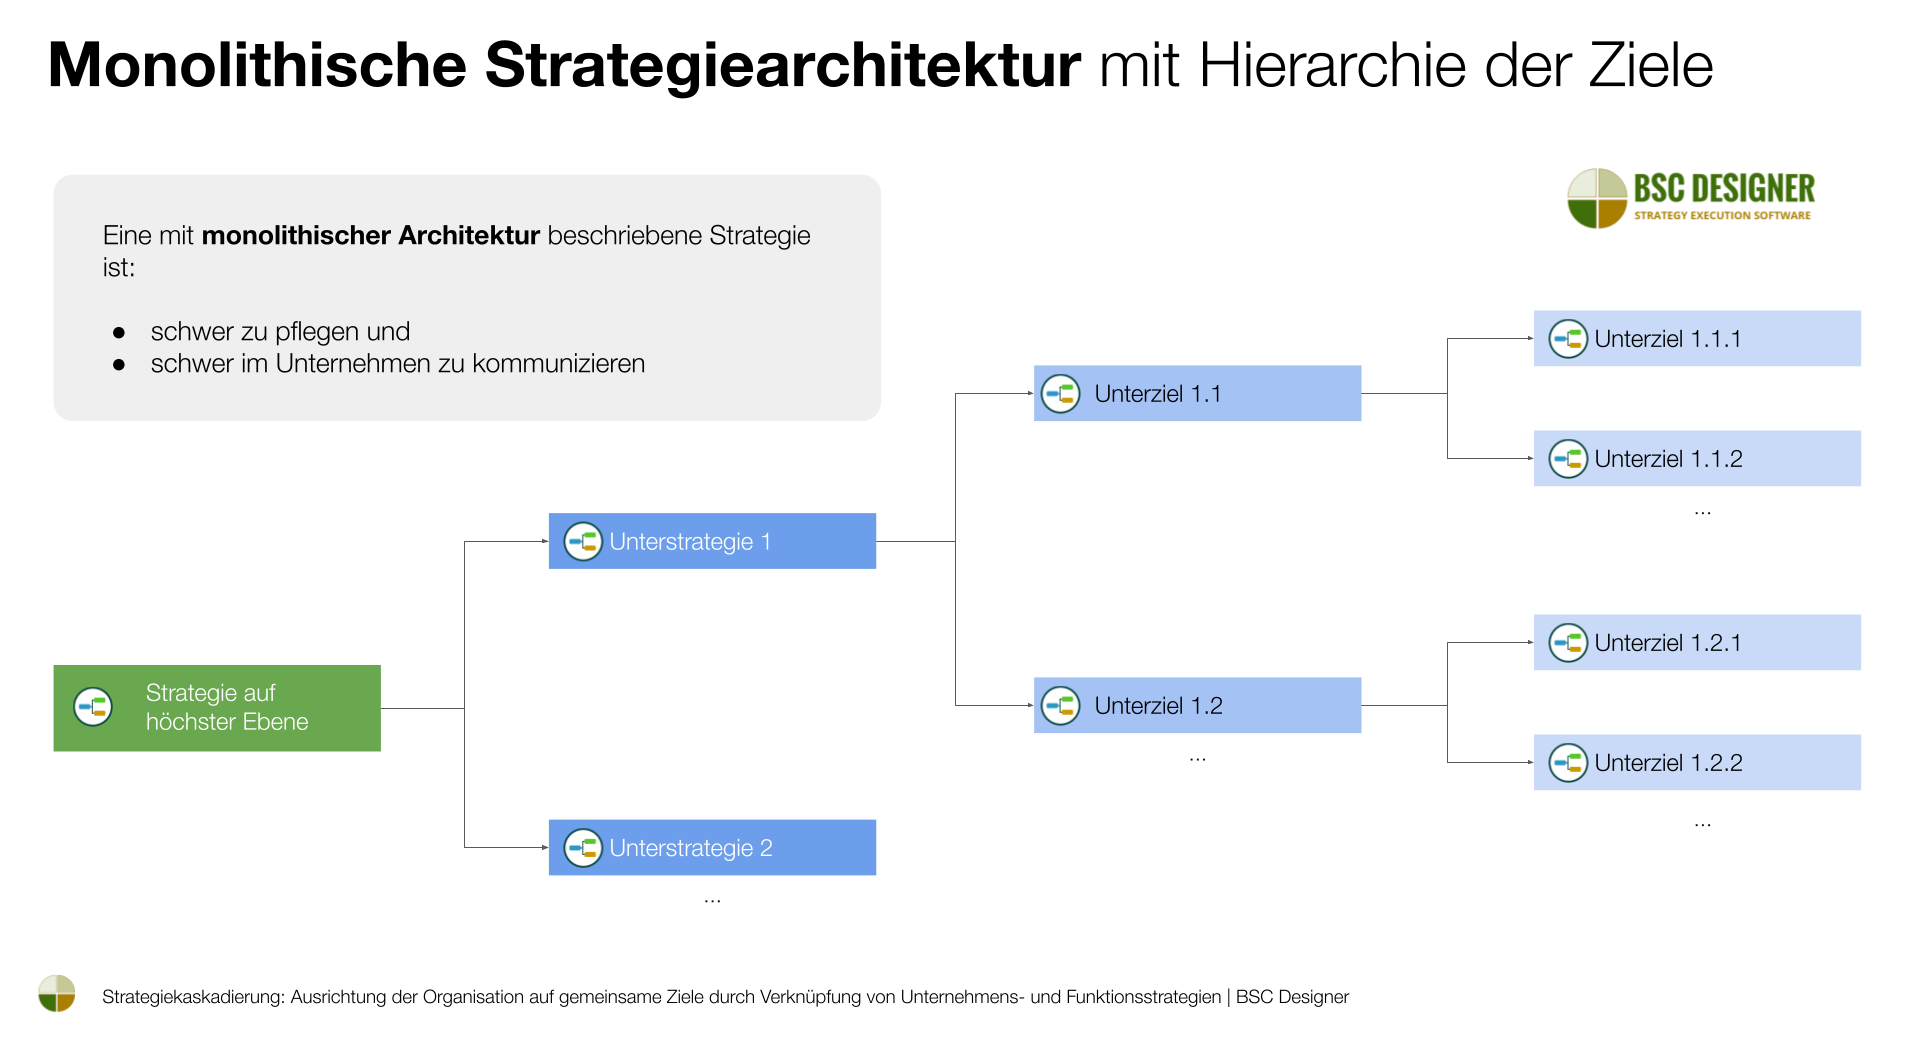 Monolithische Strategiearchitektur mit Hierarchie der Ziele